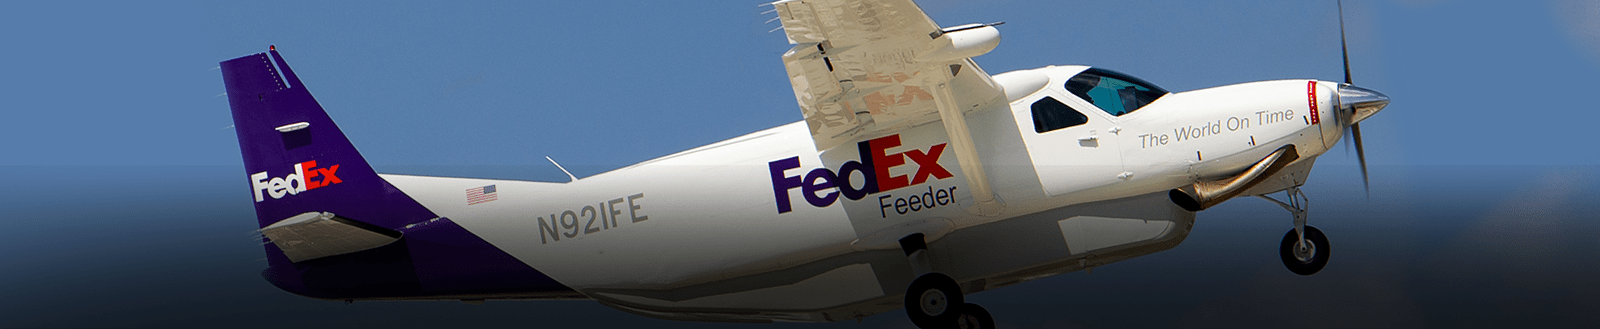 flight school purple runway fedex program mountain air cargo mac fedex feeder